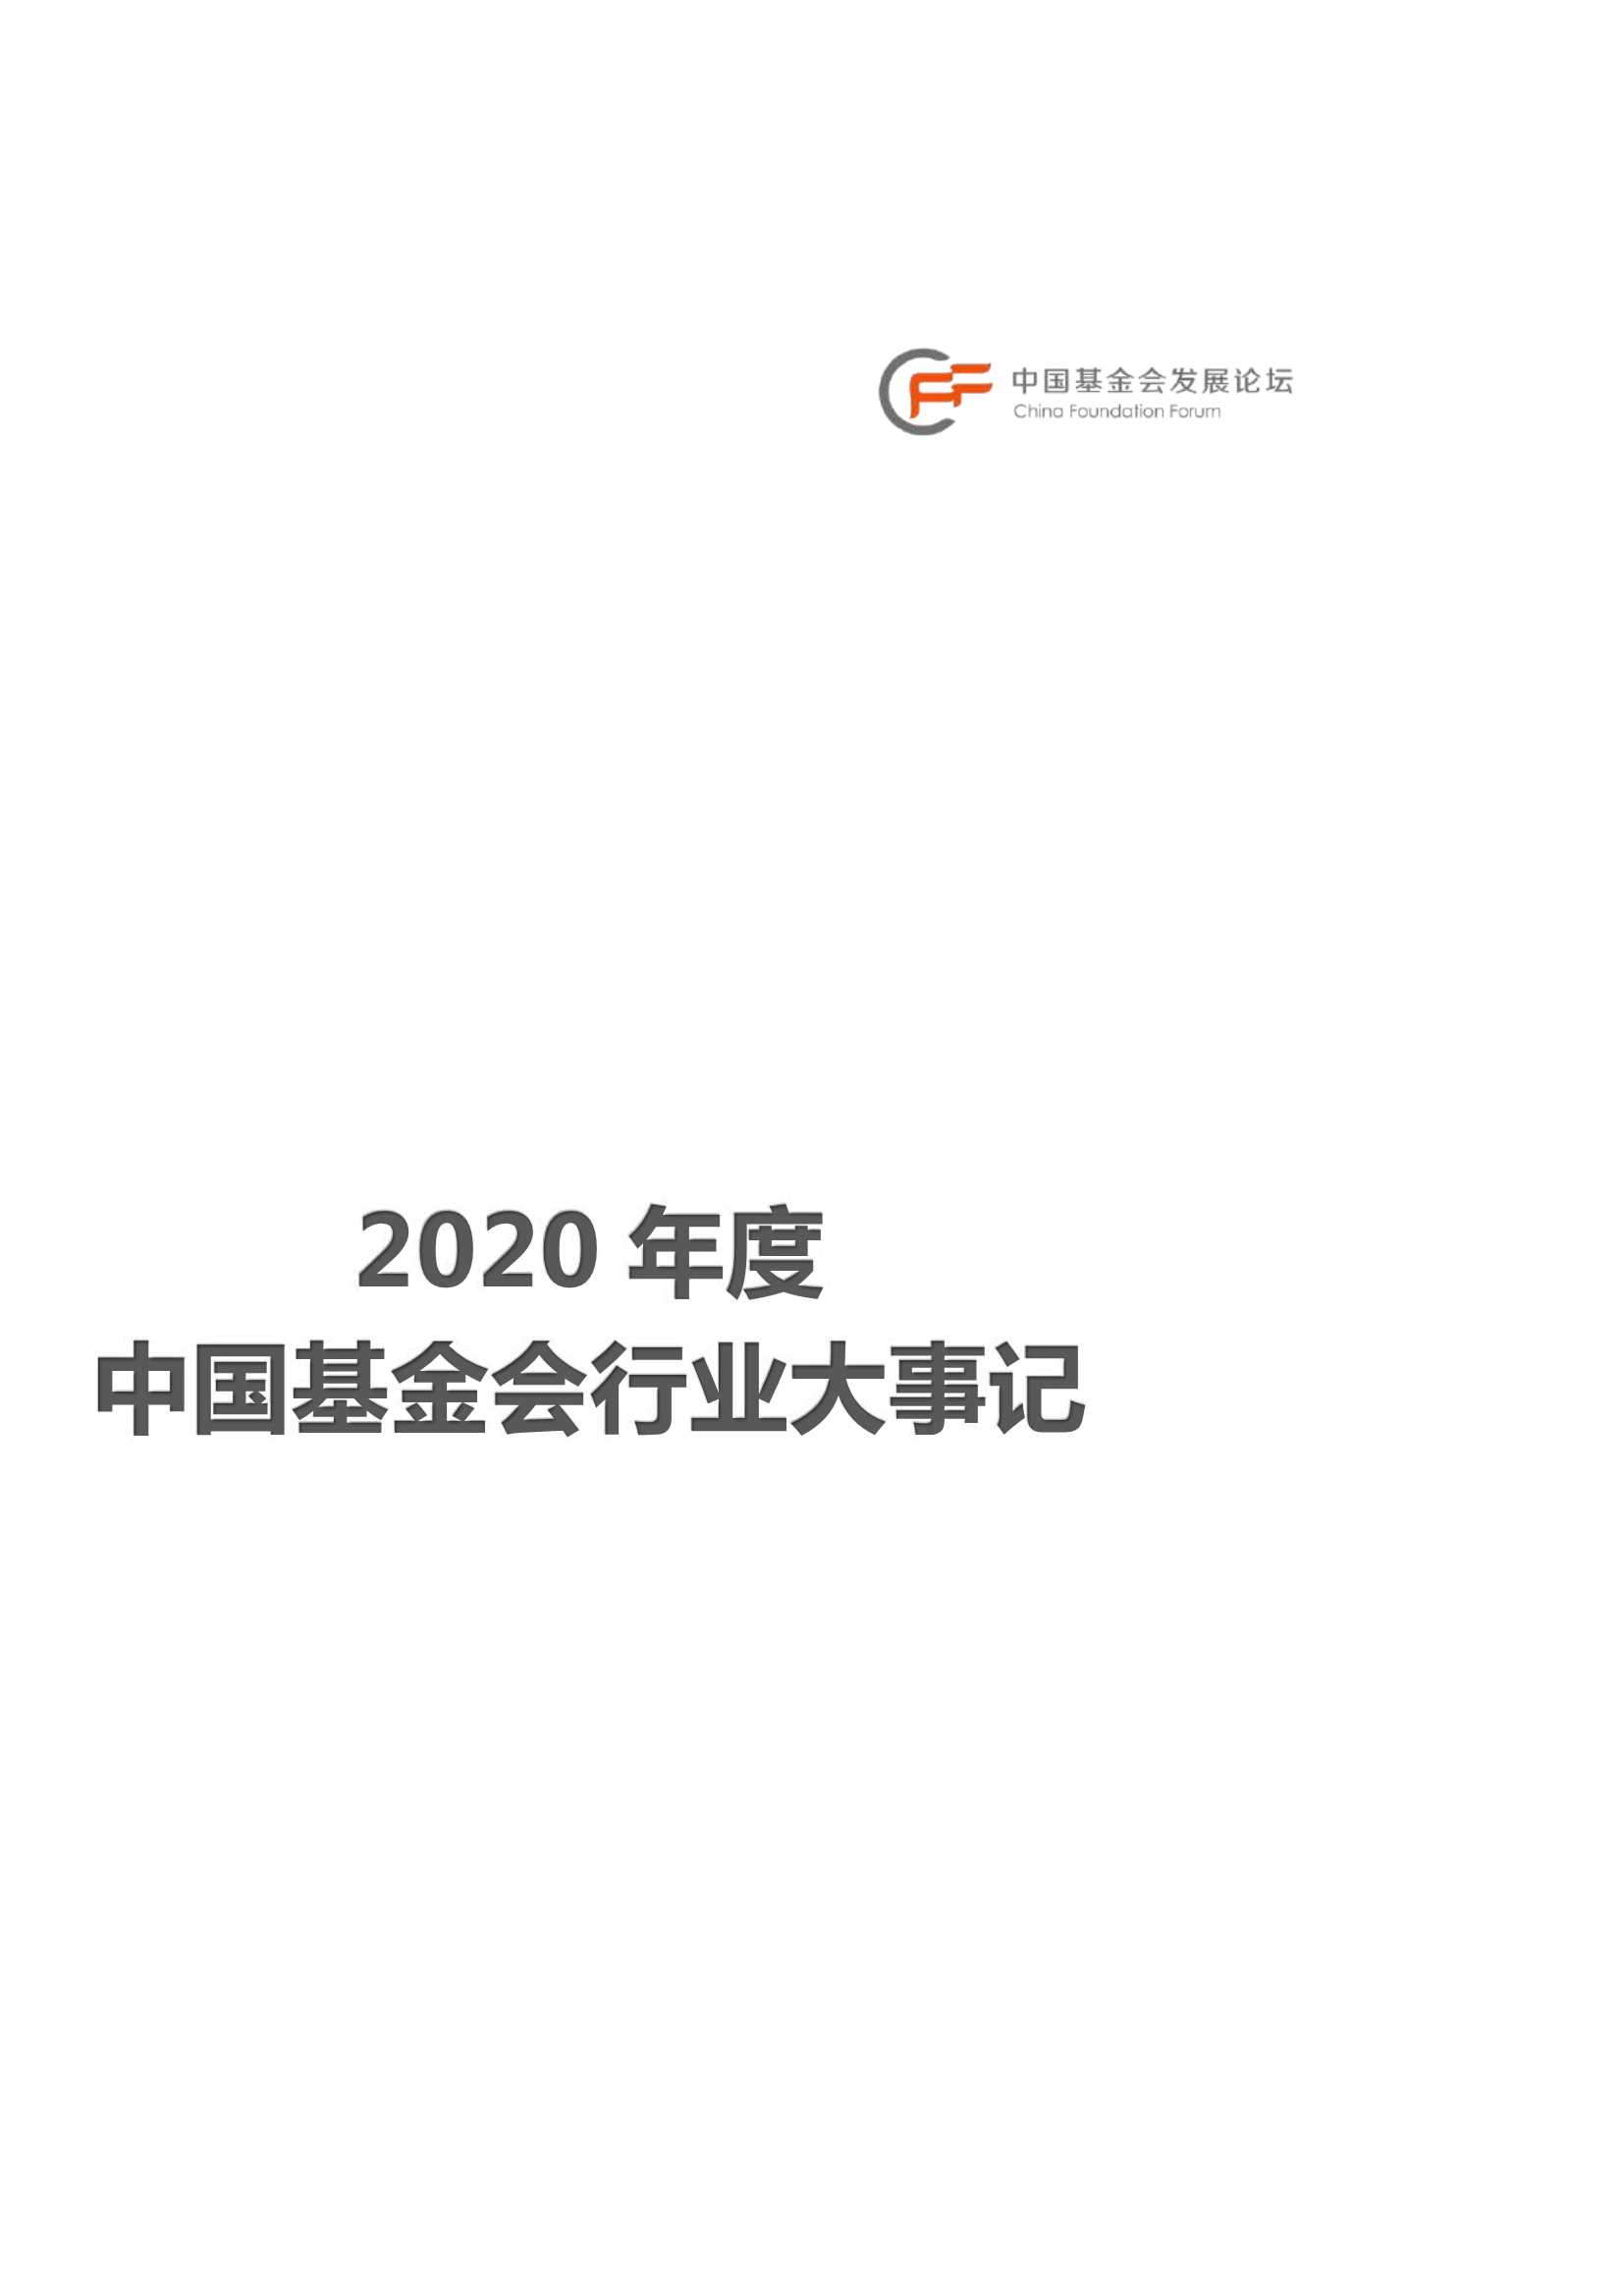 2020年度中国基金会行业大事记-2021.09-28页